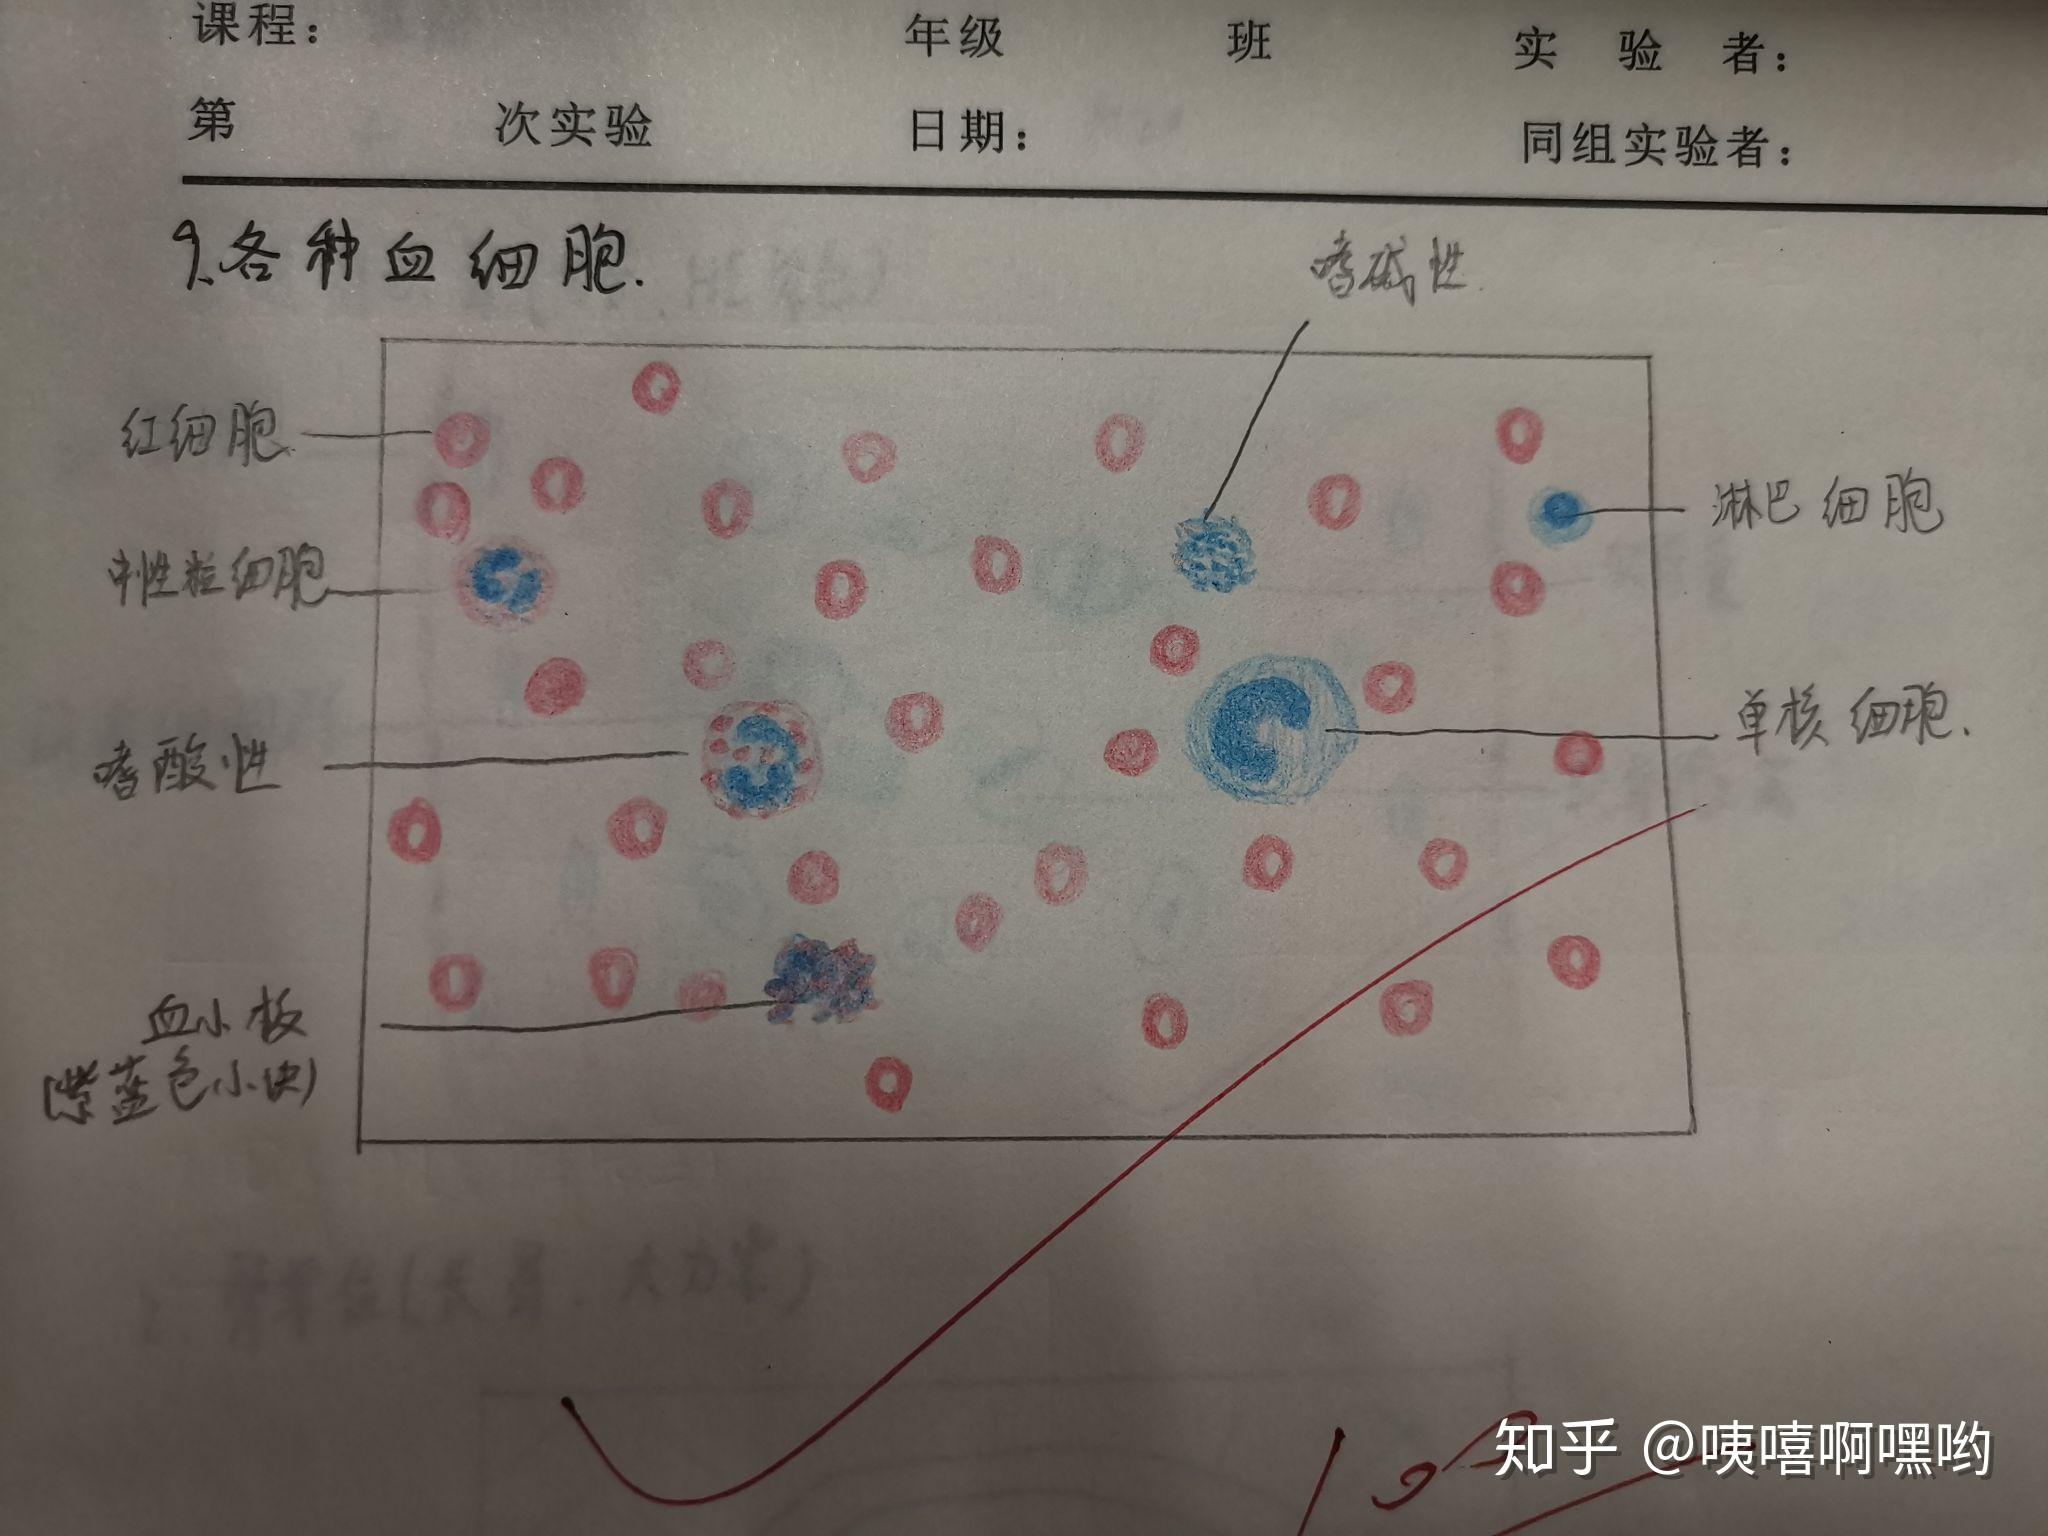 中性粒细胞绘图红蓝图片